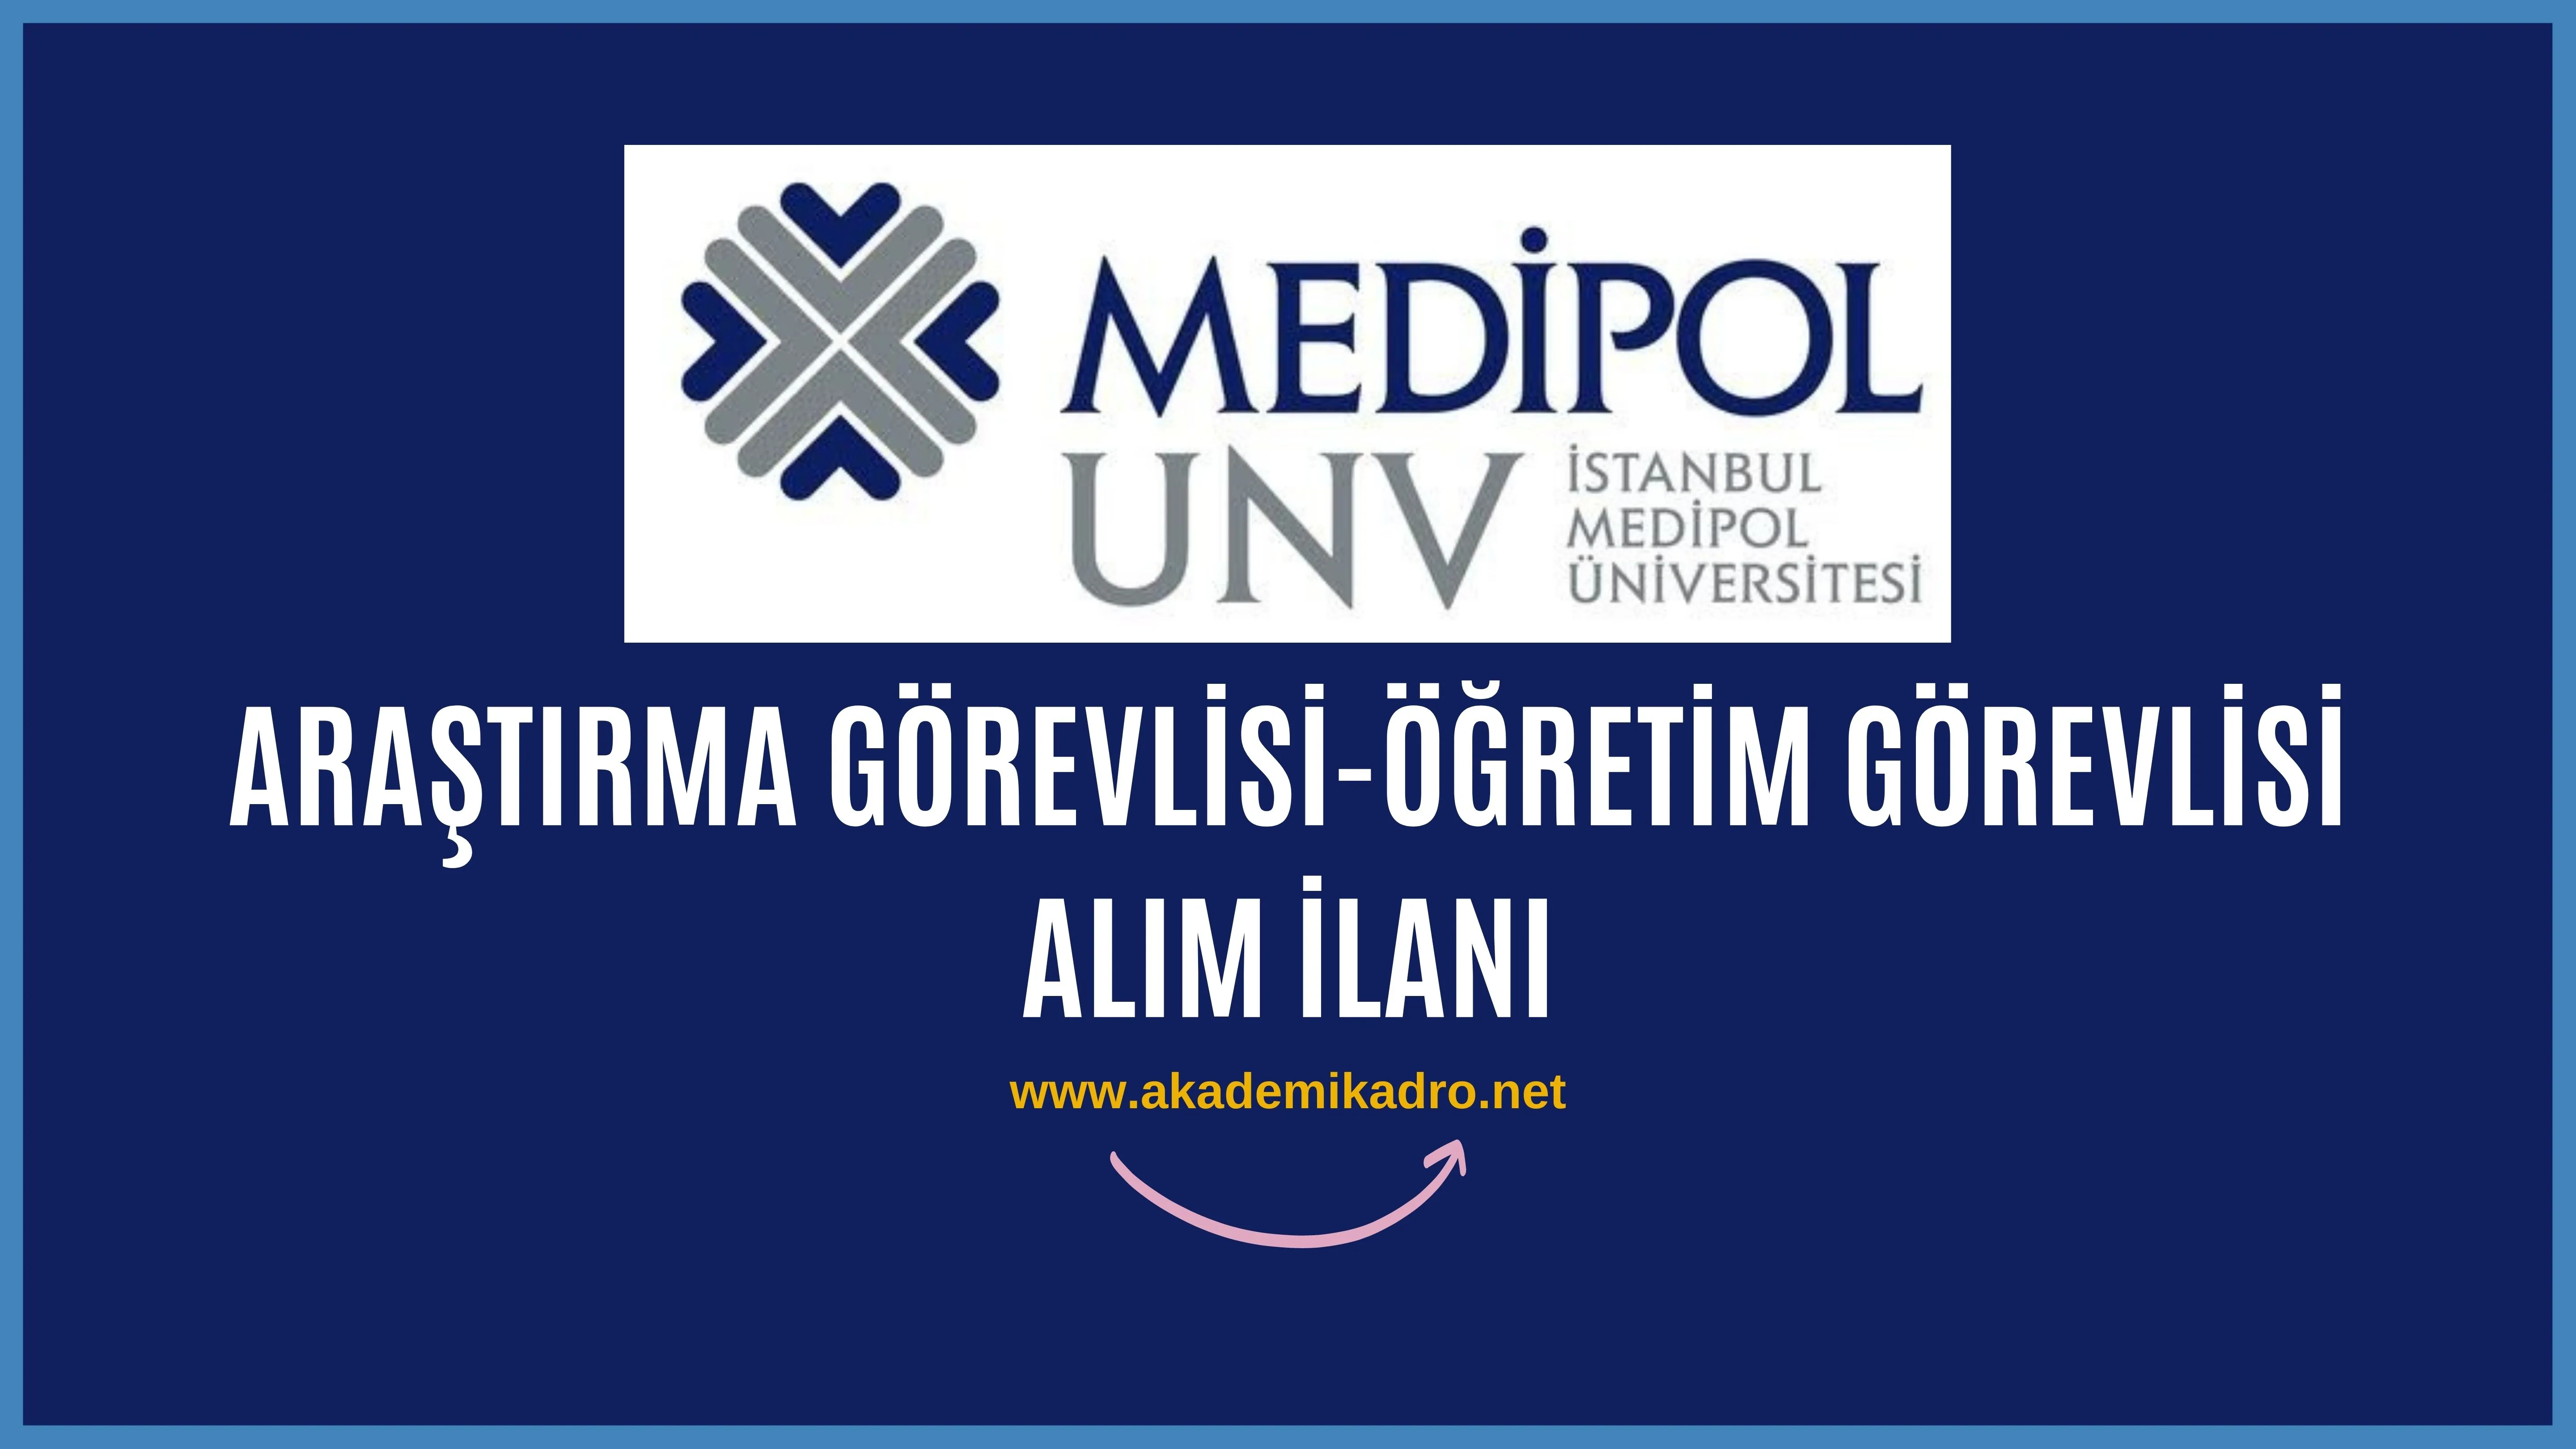 İstanbul Medipol Üniversitesi 6 Araştırma ve 6 Öğretim görevlisi alacaktır. Son başvuru tarihi 15 Mart 2023